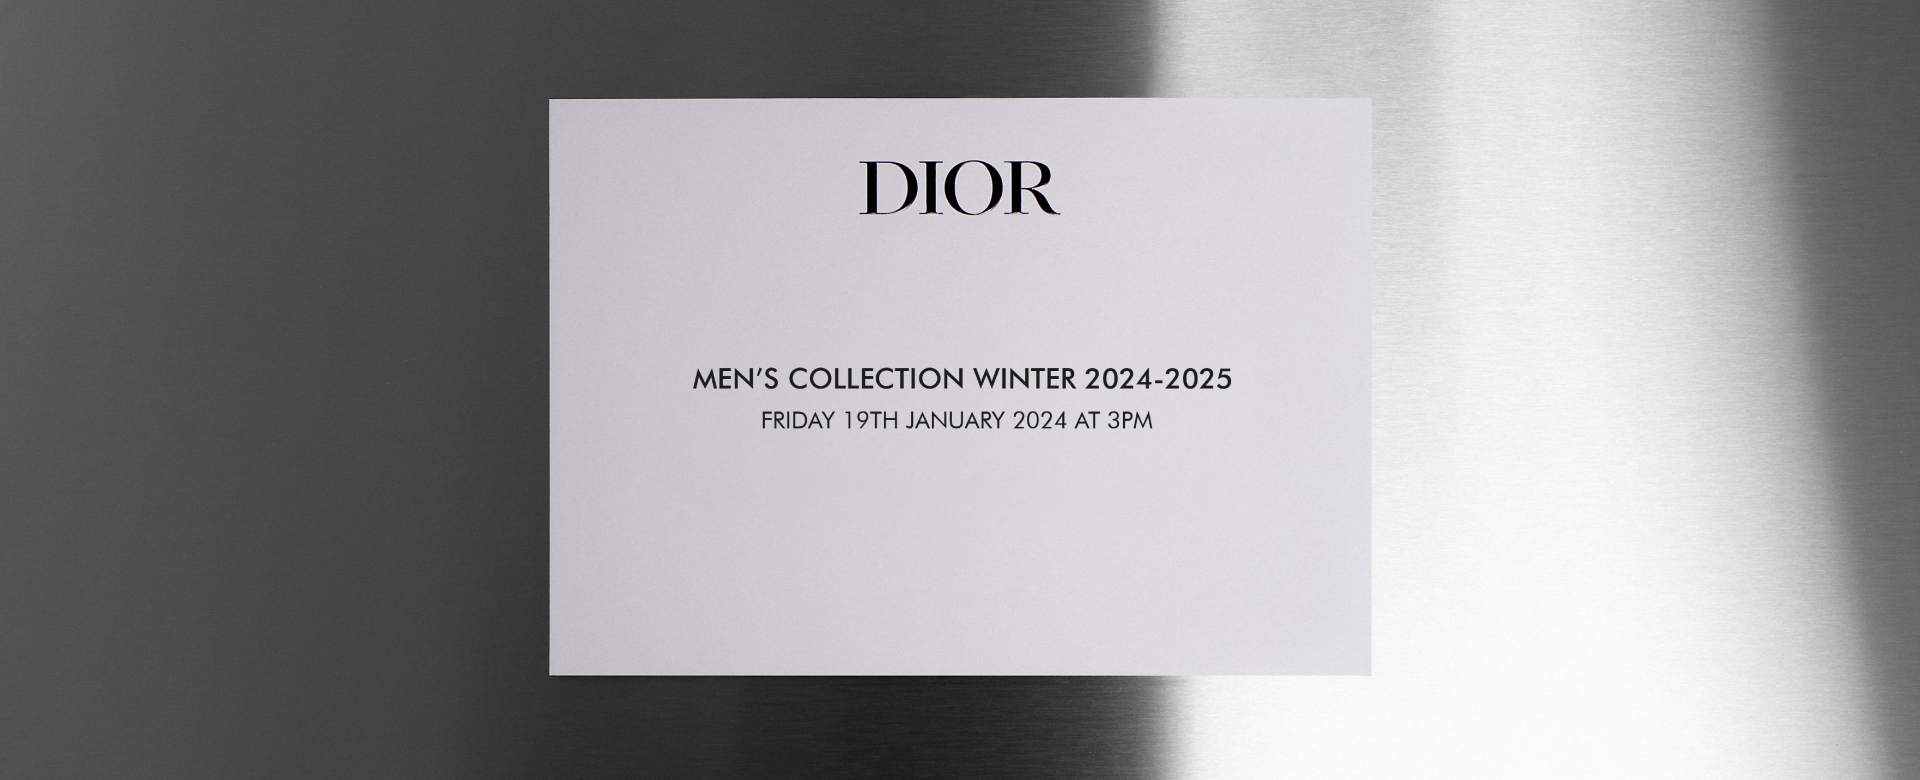 [Livestream] Show diễn Dior Men Thu Đông 2024 lúc 9:00pm, 19/01/2024